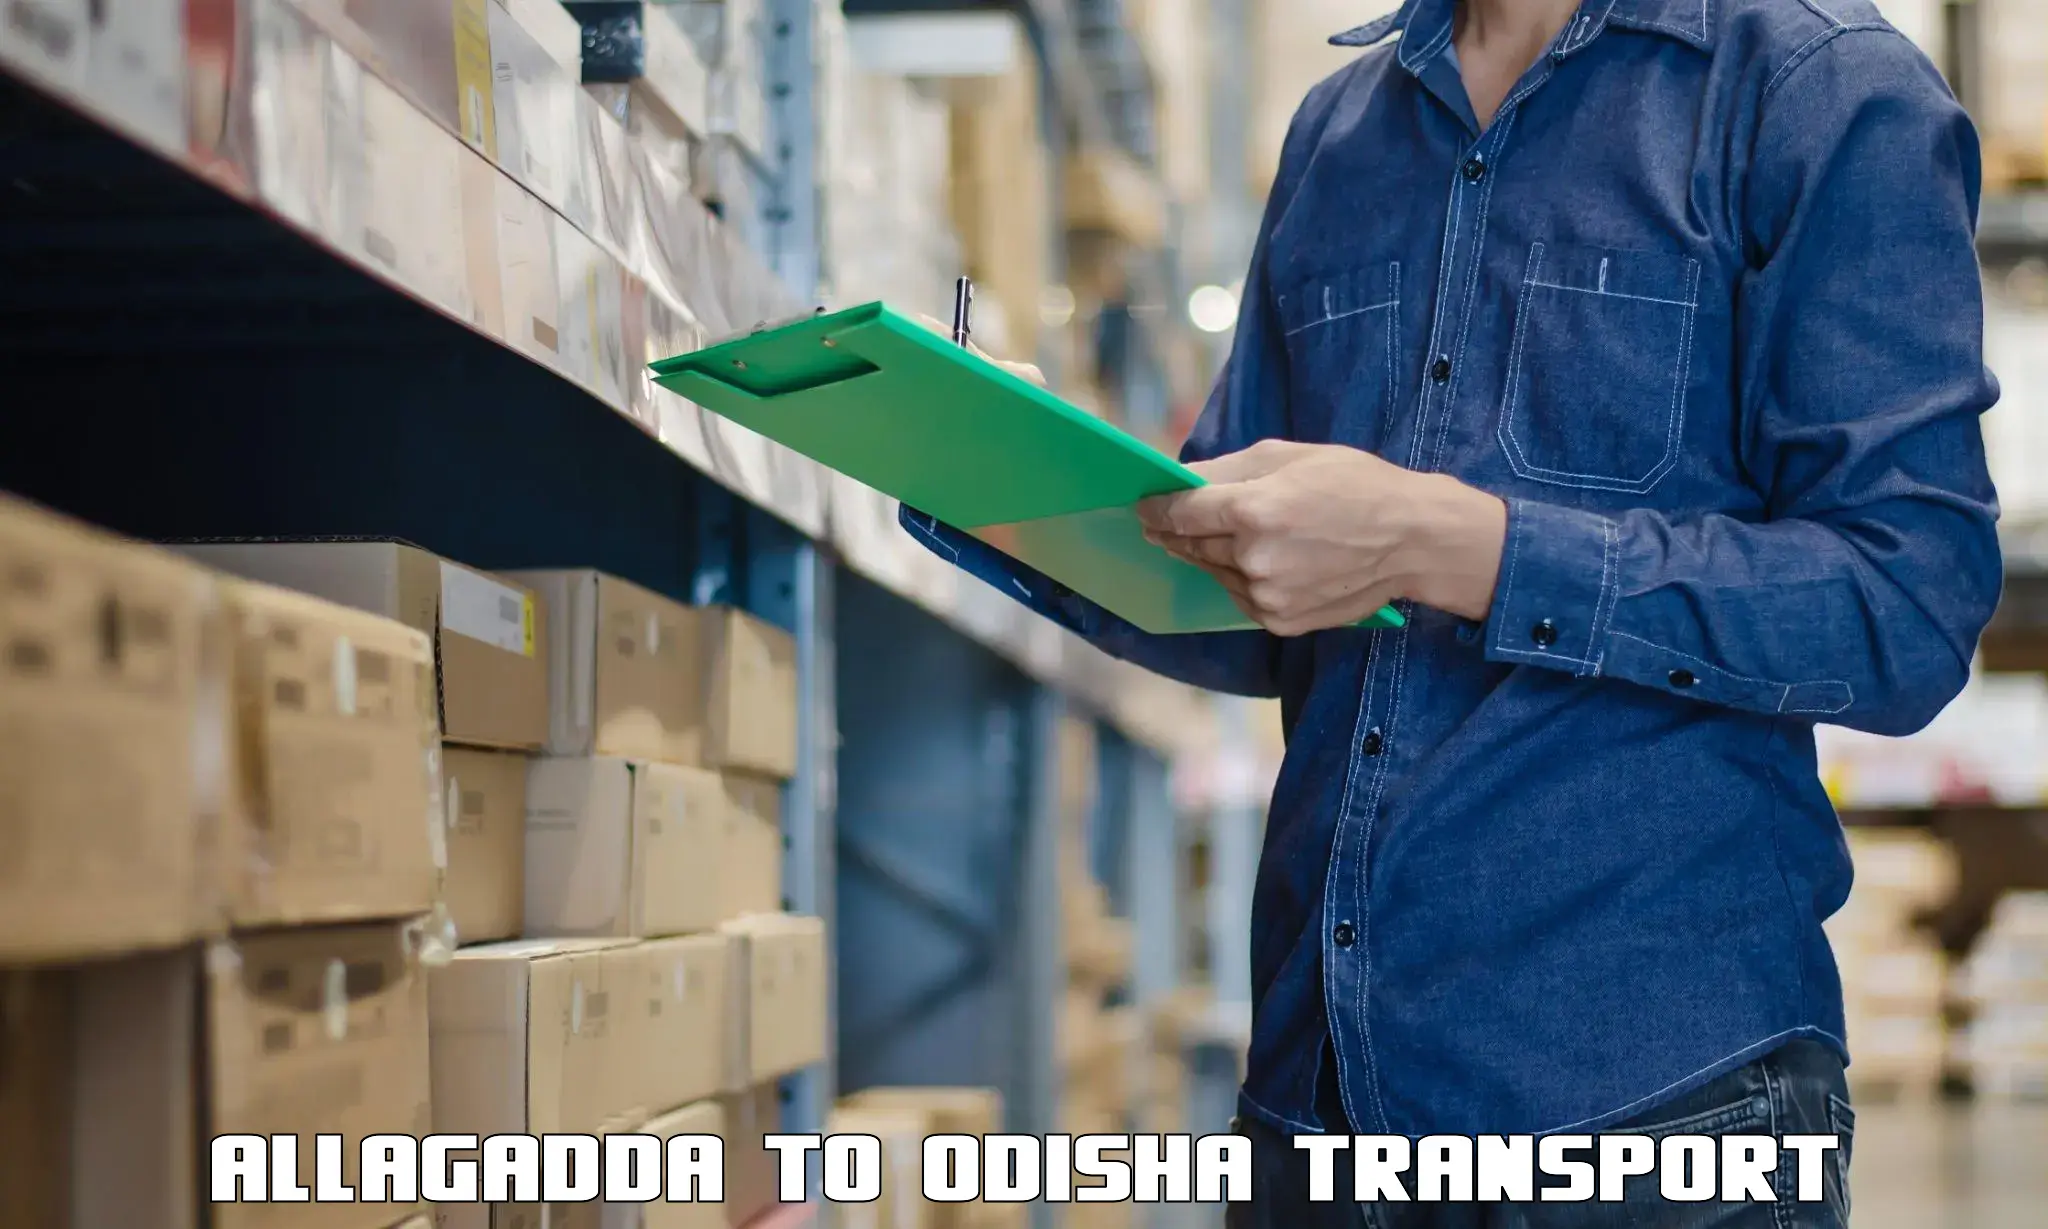 Transportation solution services Allagadda to Gumadera